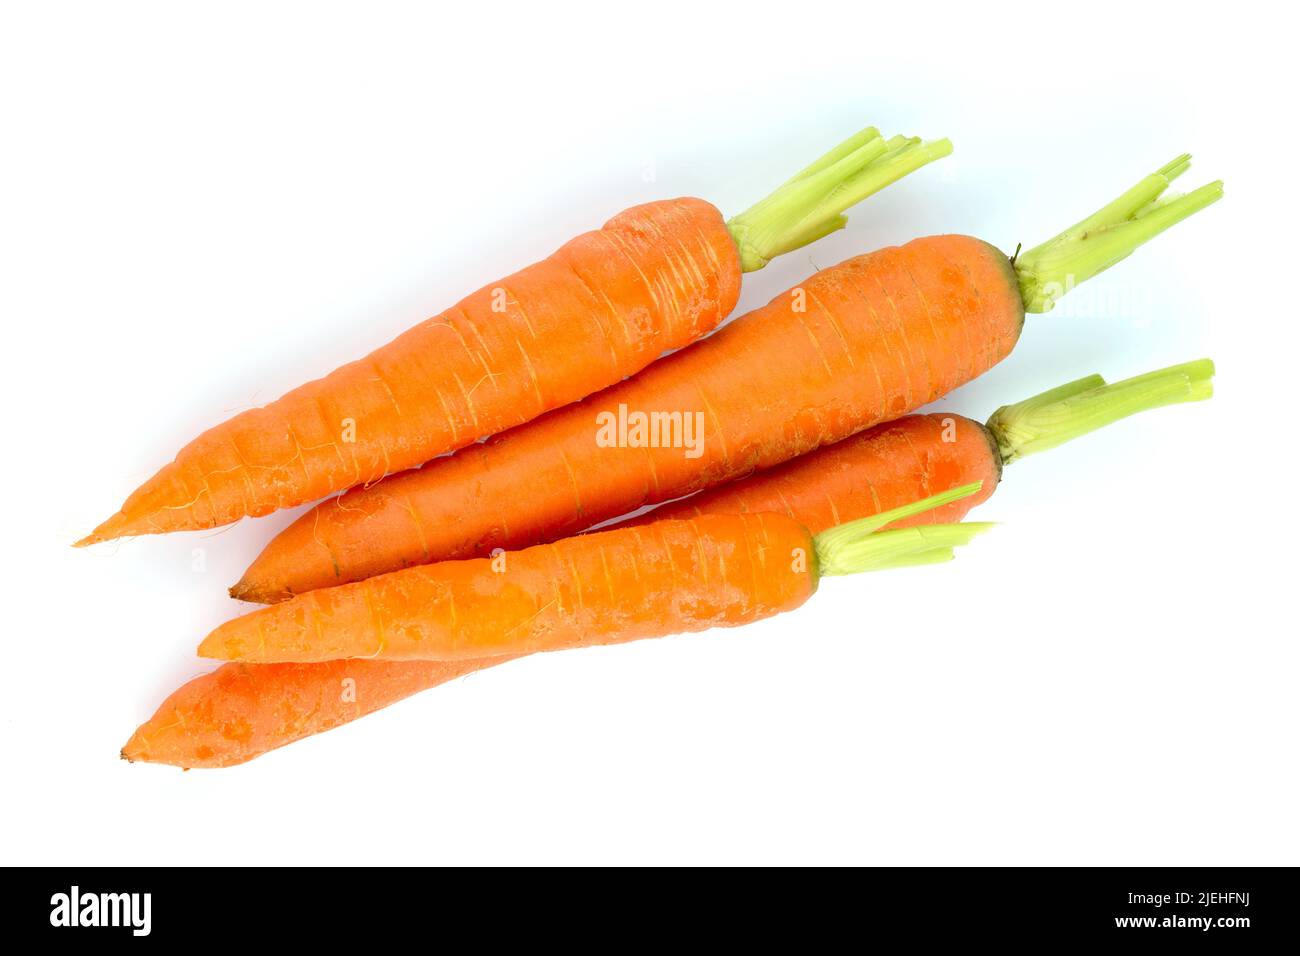 Möhren, Karotten, Wurzeln aus biologischem Anbau liegen auf weißem Hintergrund. Frisches Obst und Gemüse ist immer gesund. Stockfoto